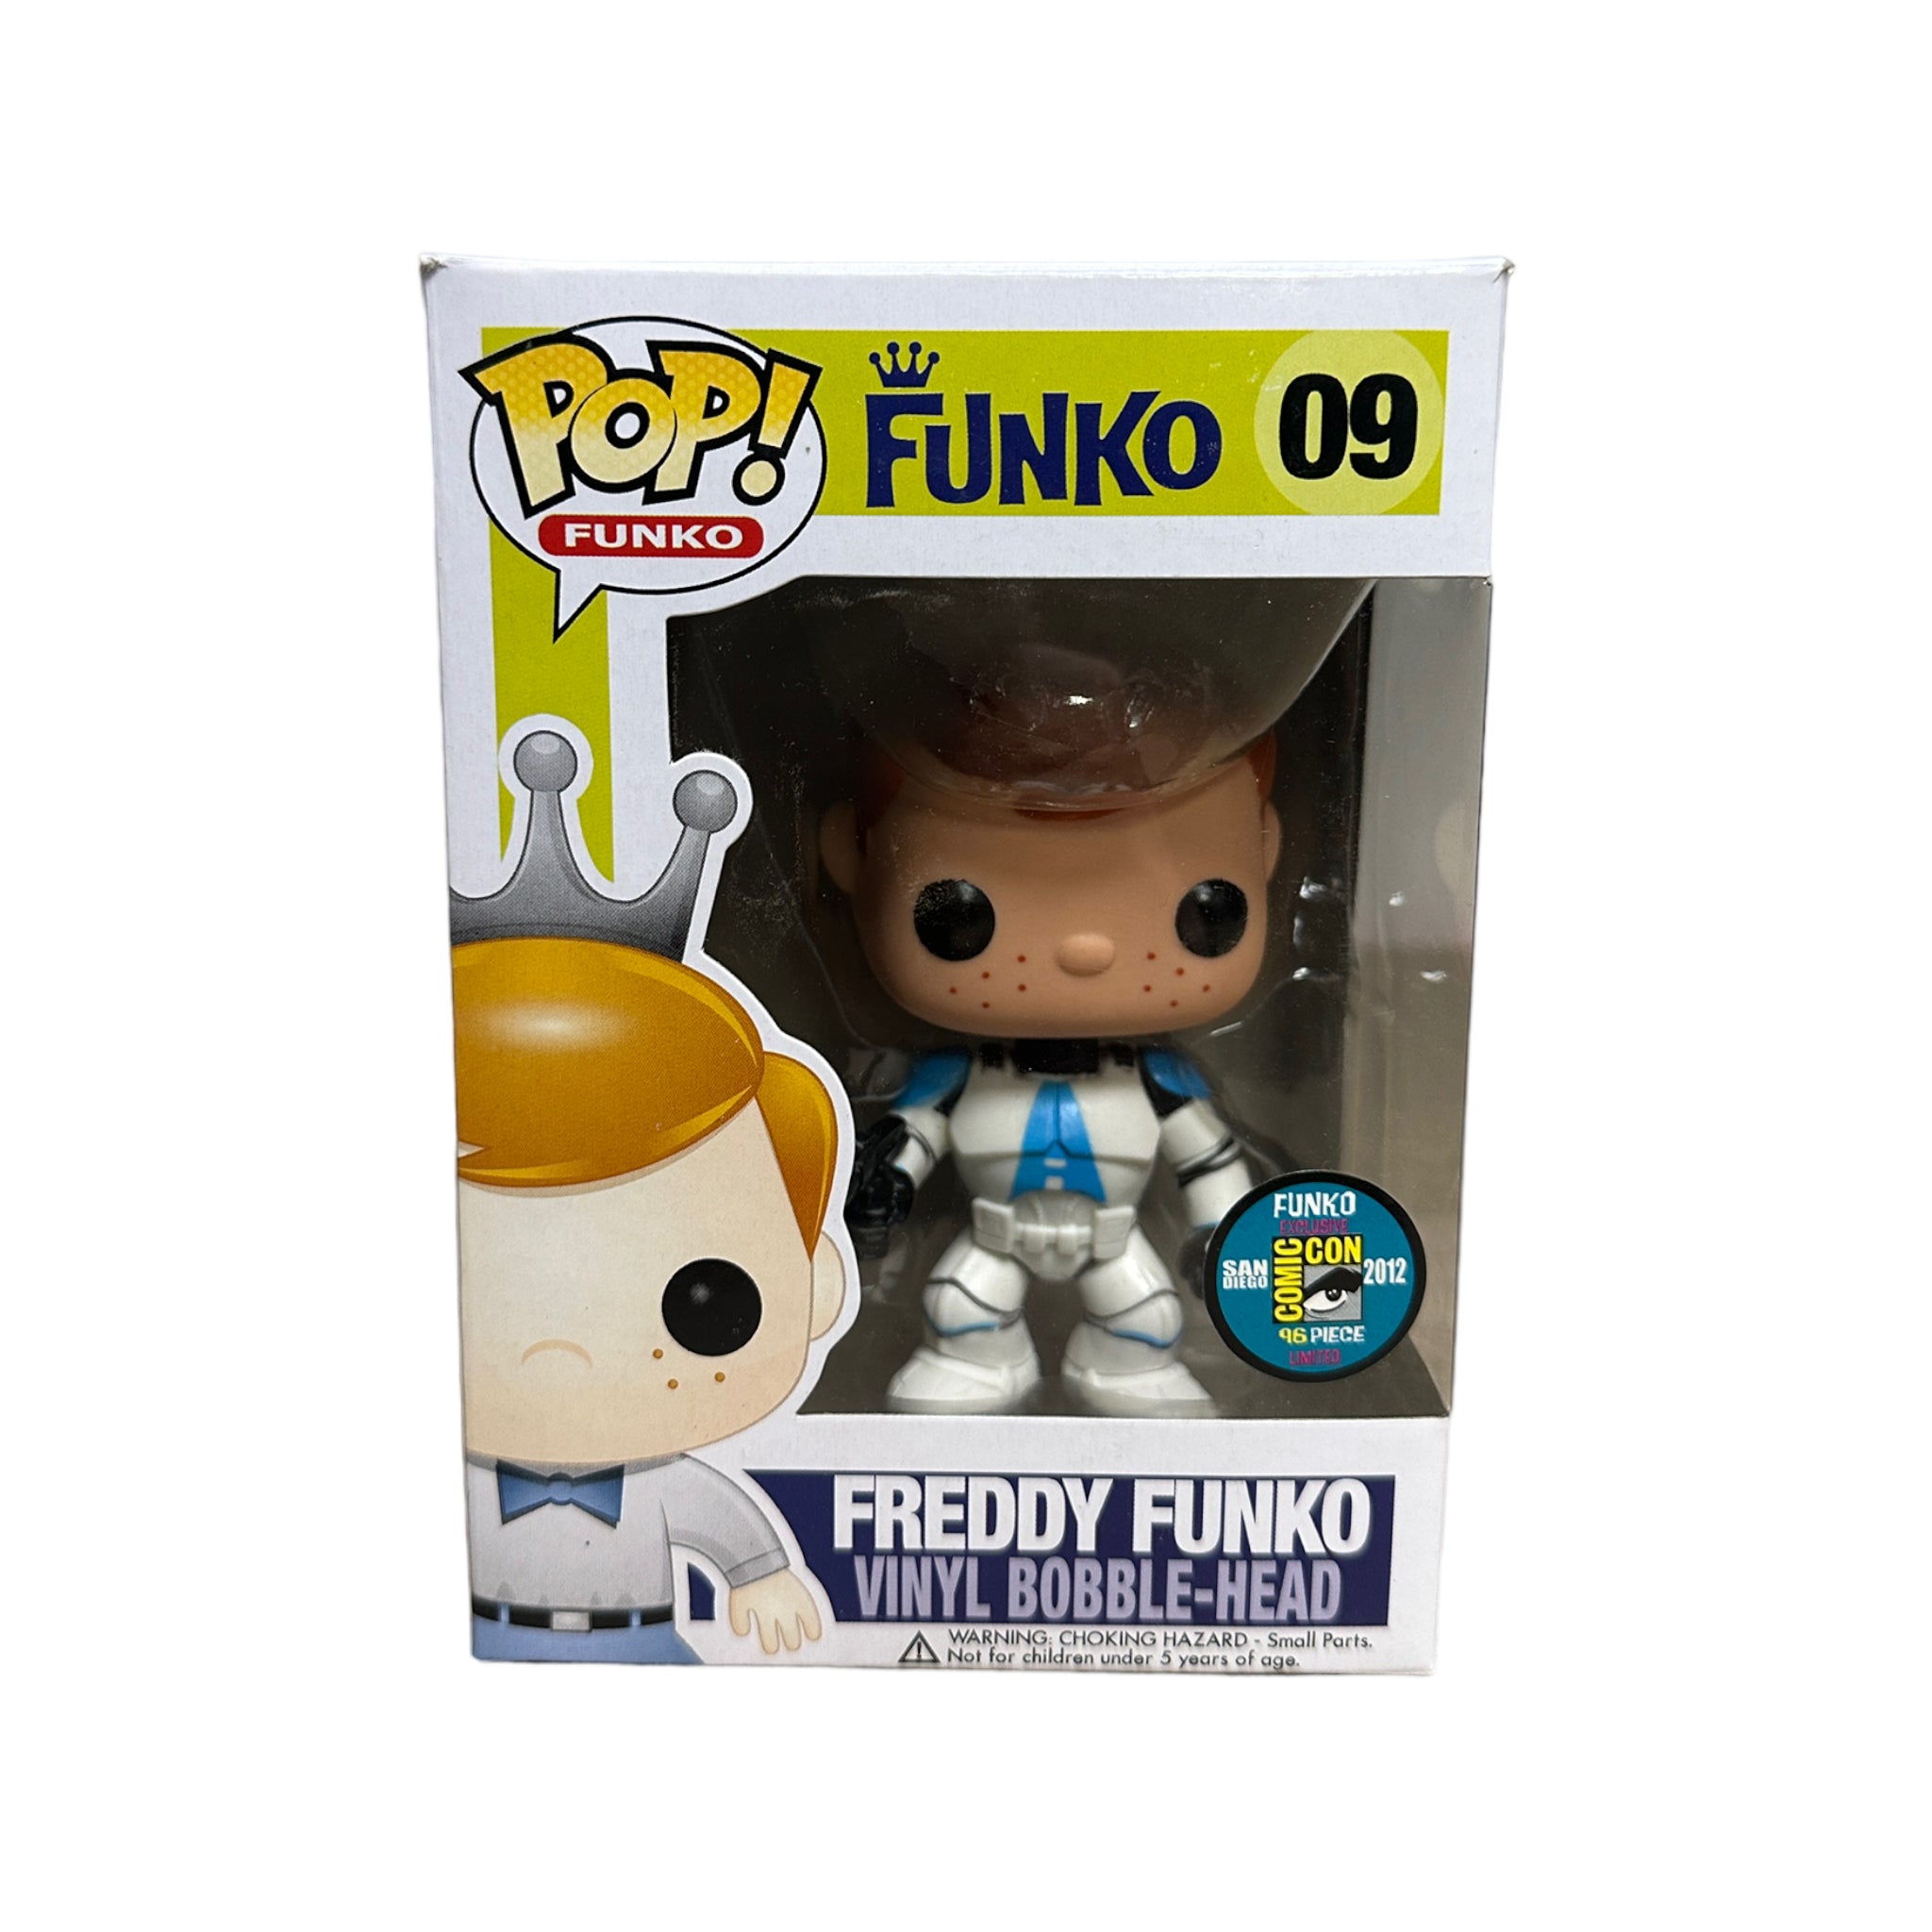 Freddy Funko as Clone Trooper #09 Funko Pop! - SDCC 2012 Exclusive LE96 Pcs - Condition 8.75/10